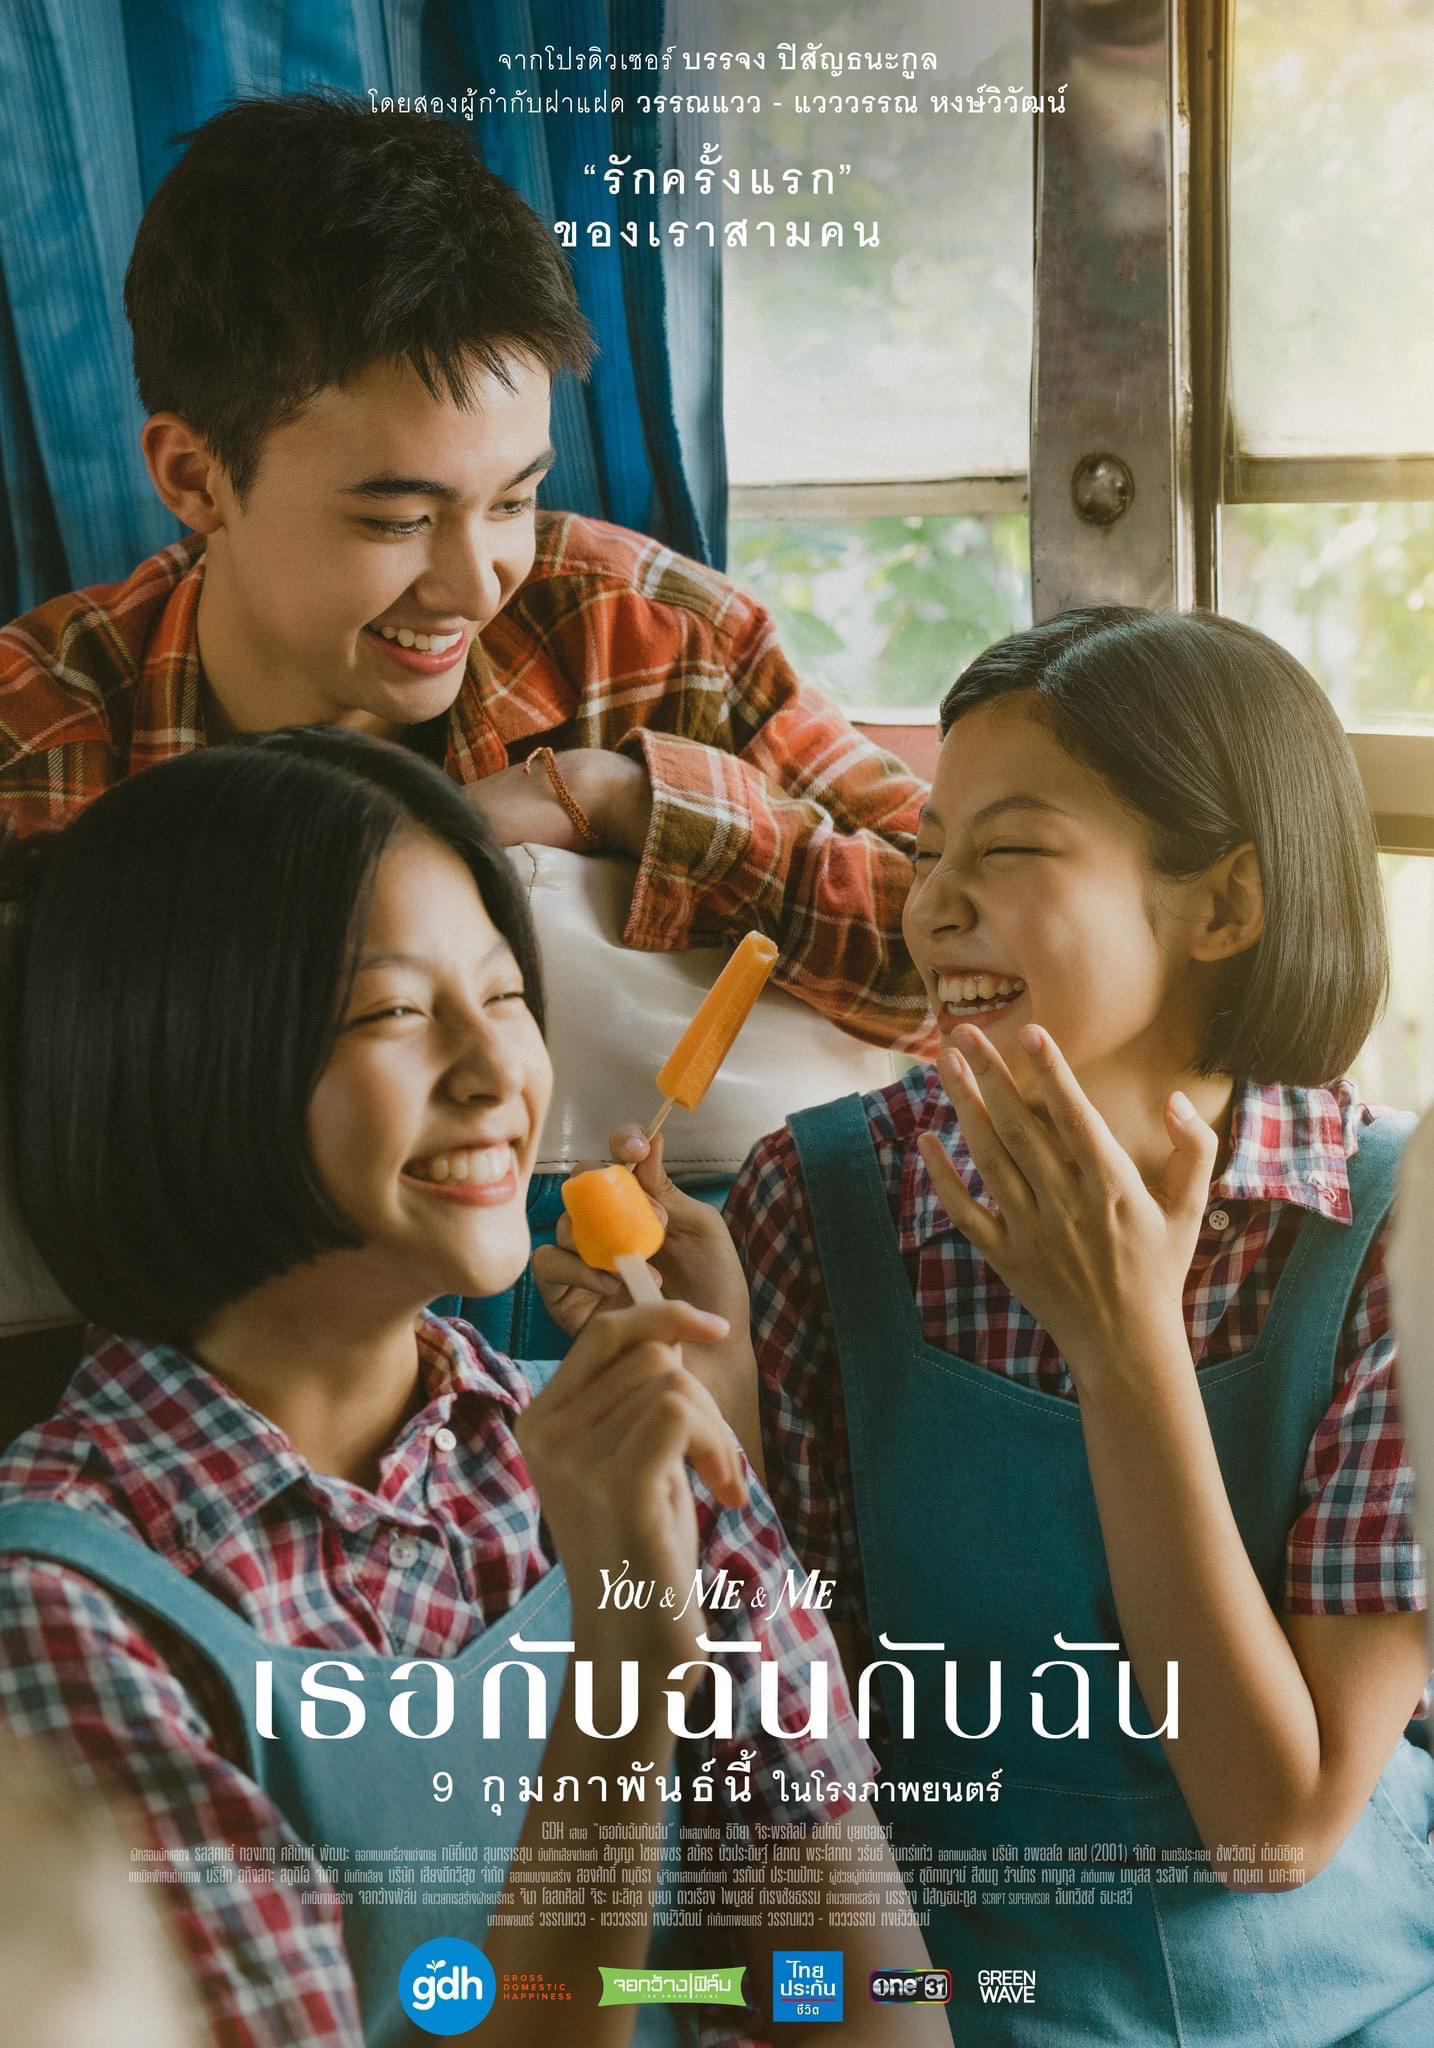 泰国电影展片单公布 《天生一对》等六部电影放映